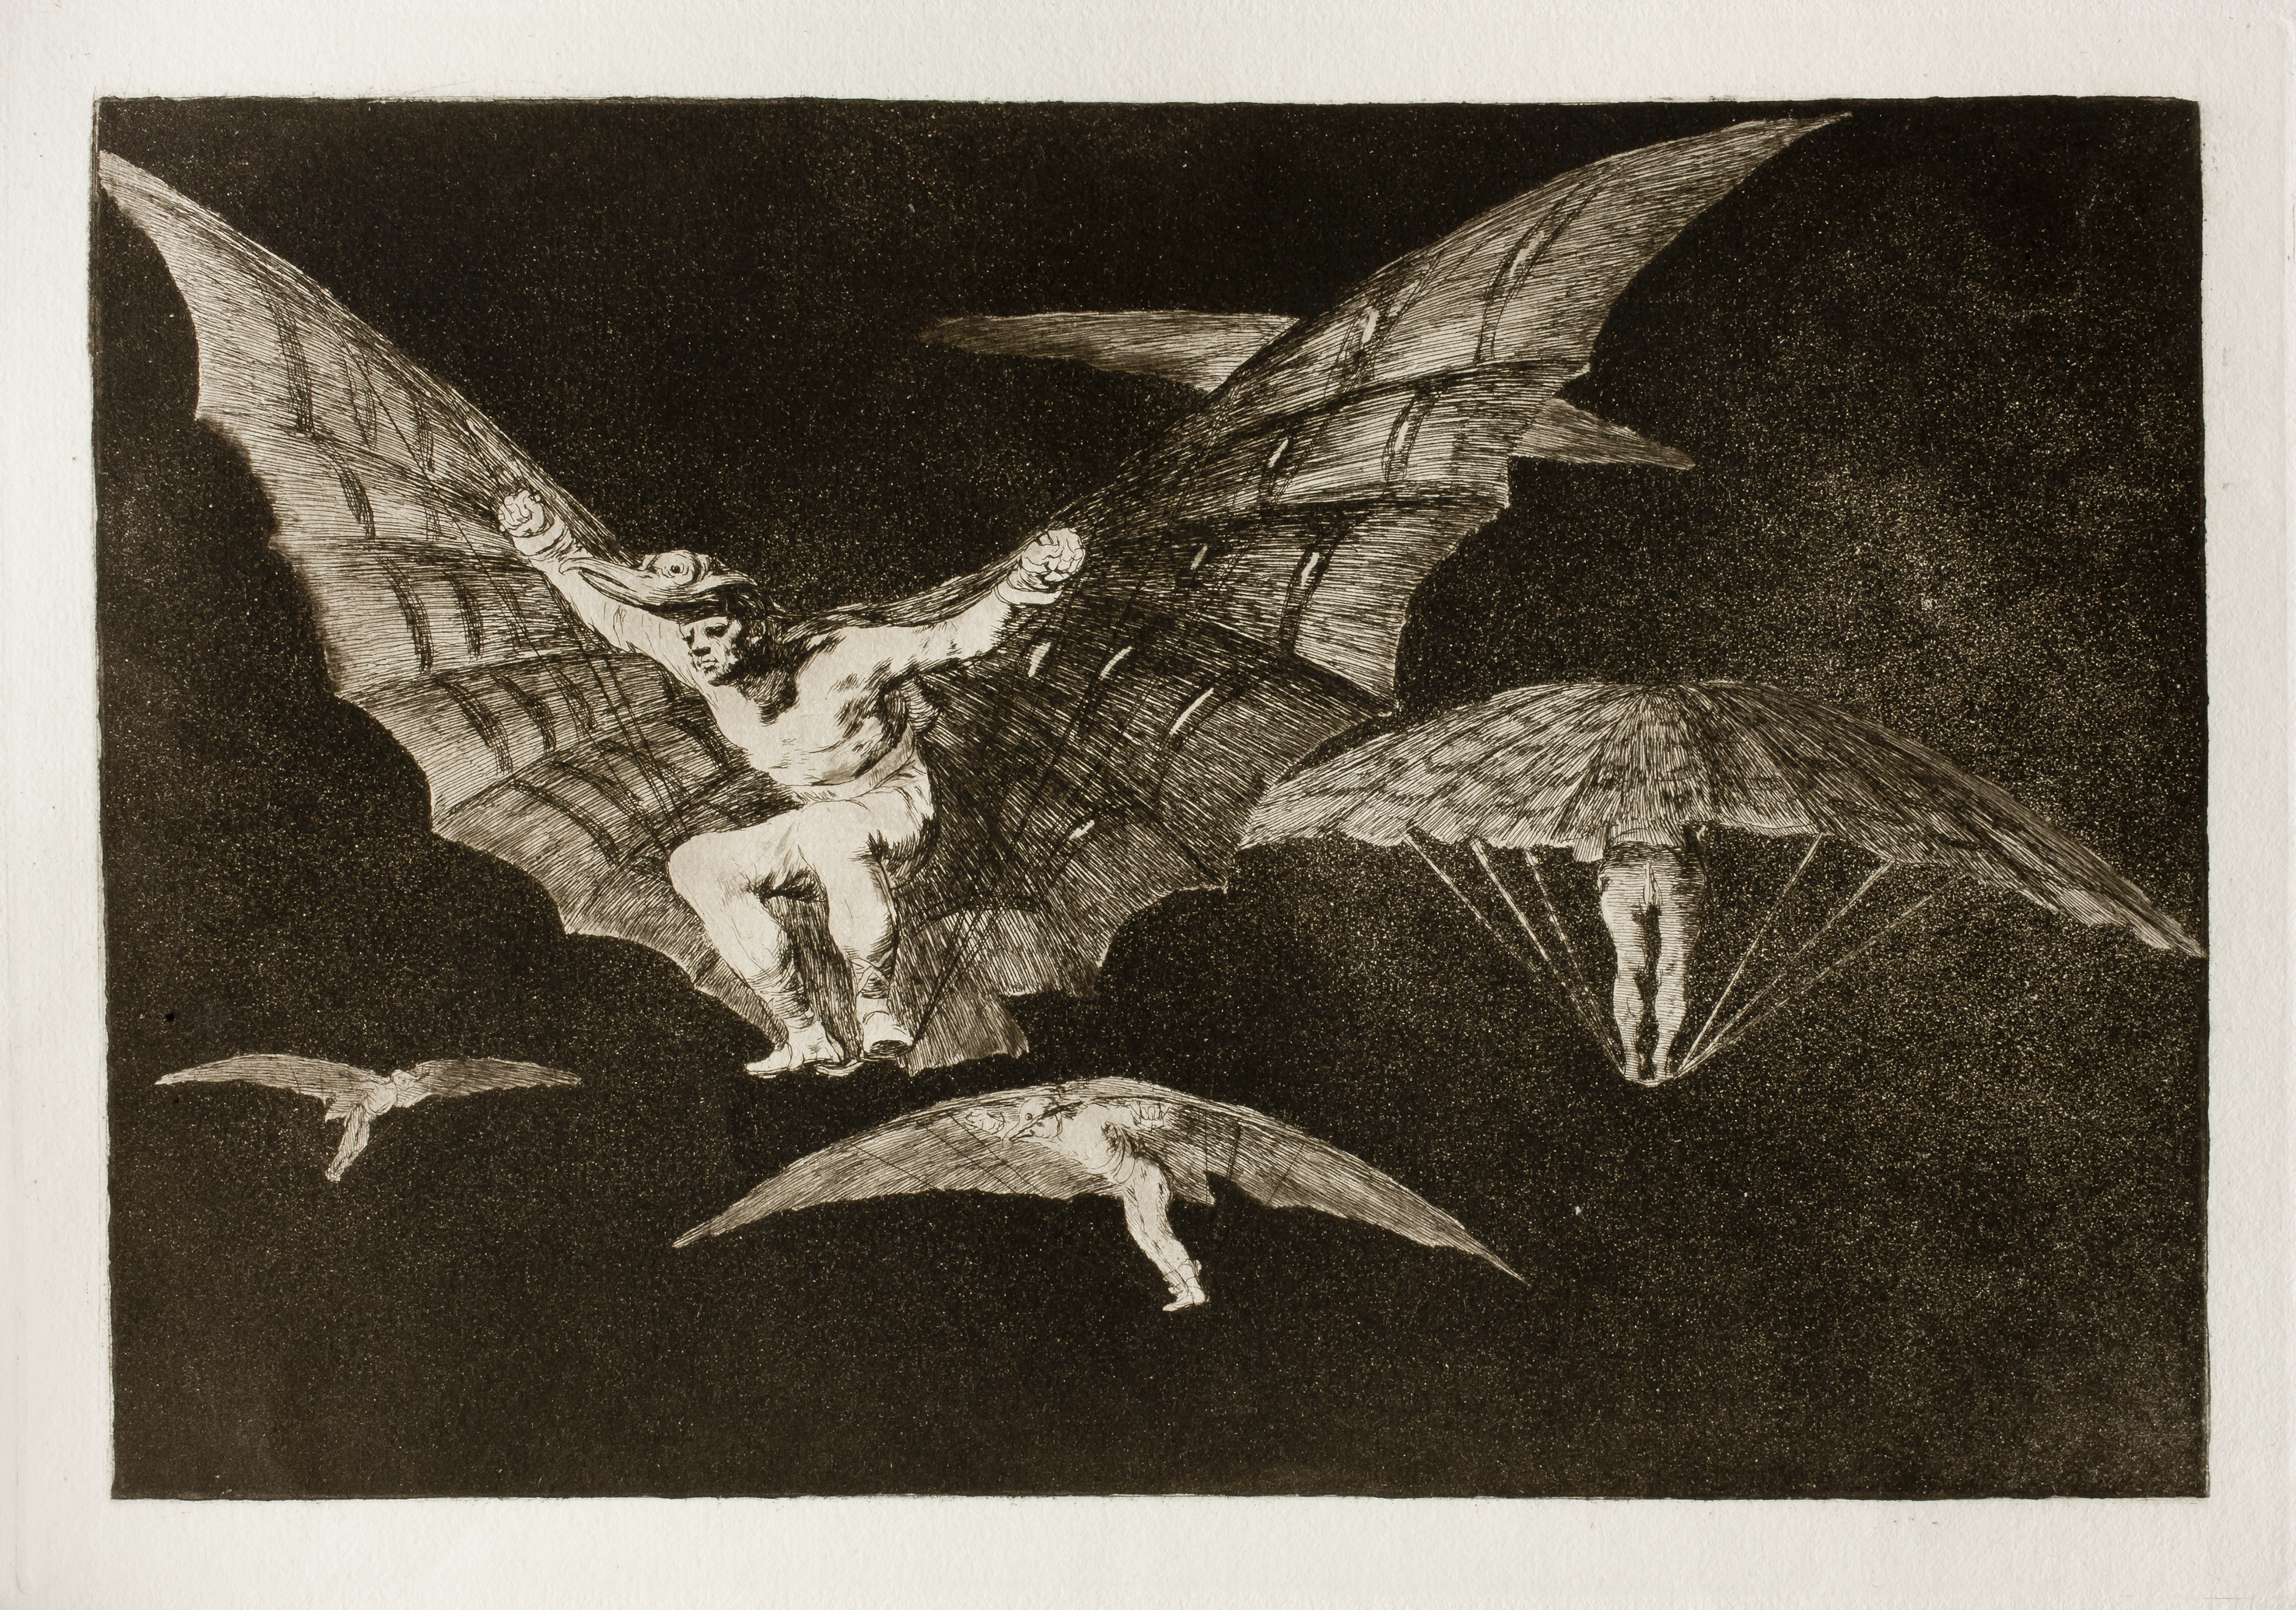 Modo de volar by Francisco Goya - 1823 Colección privada